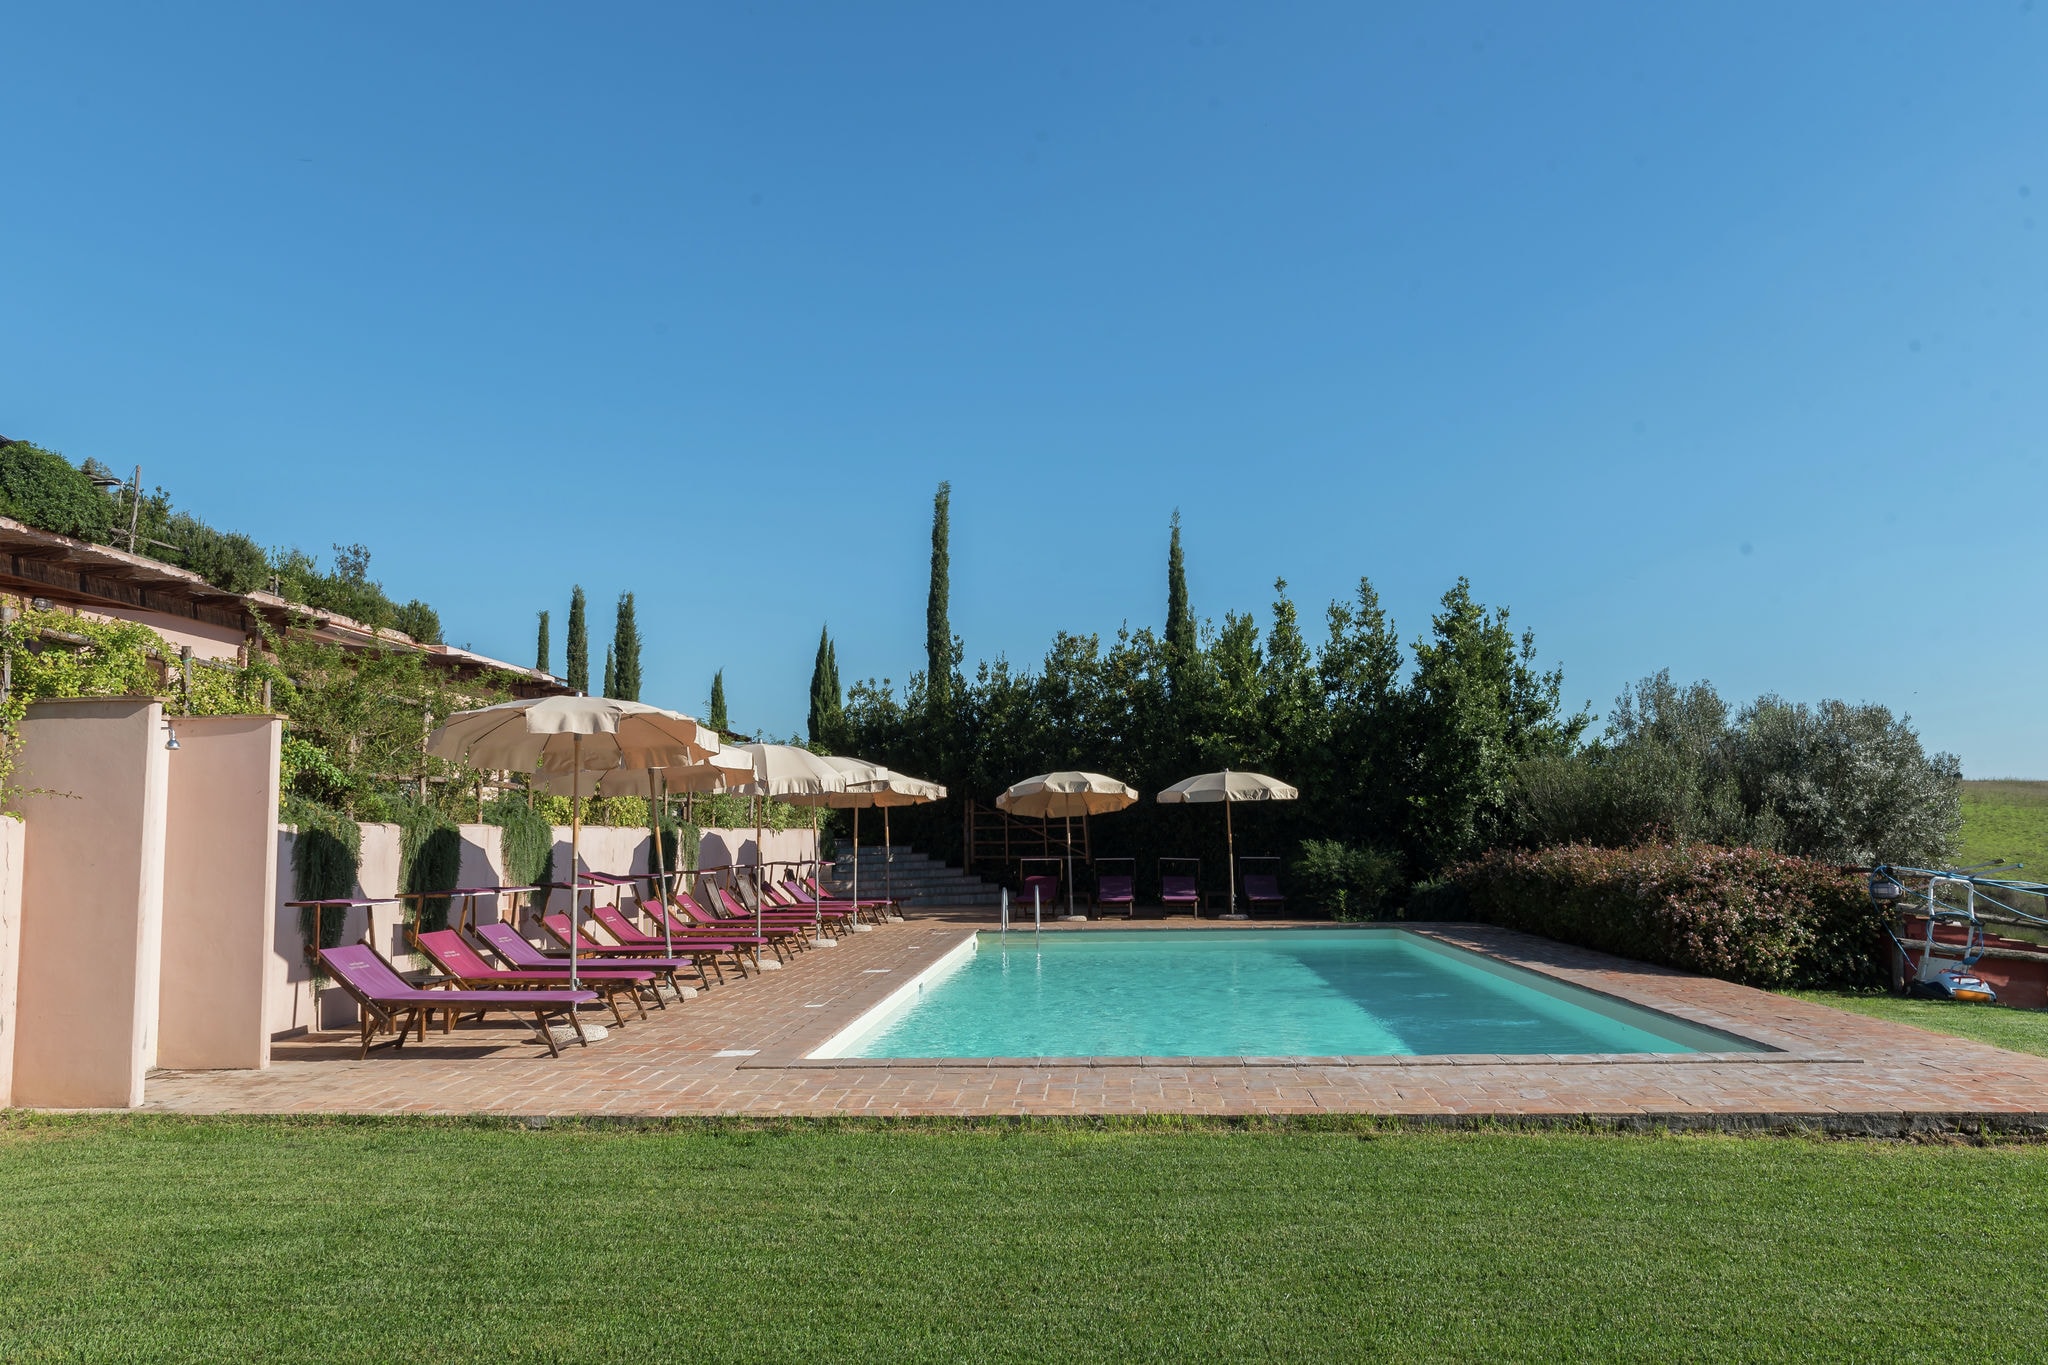 Mooie boerderij in Rome-Lazio met een gedeeld zwembad